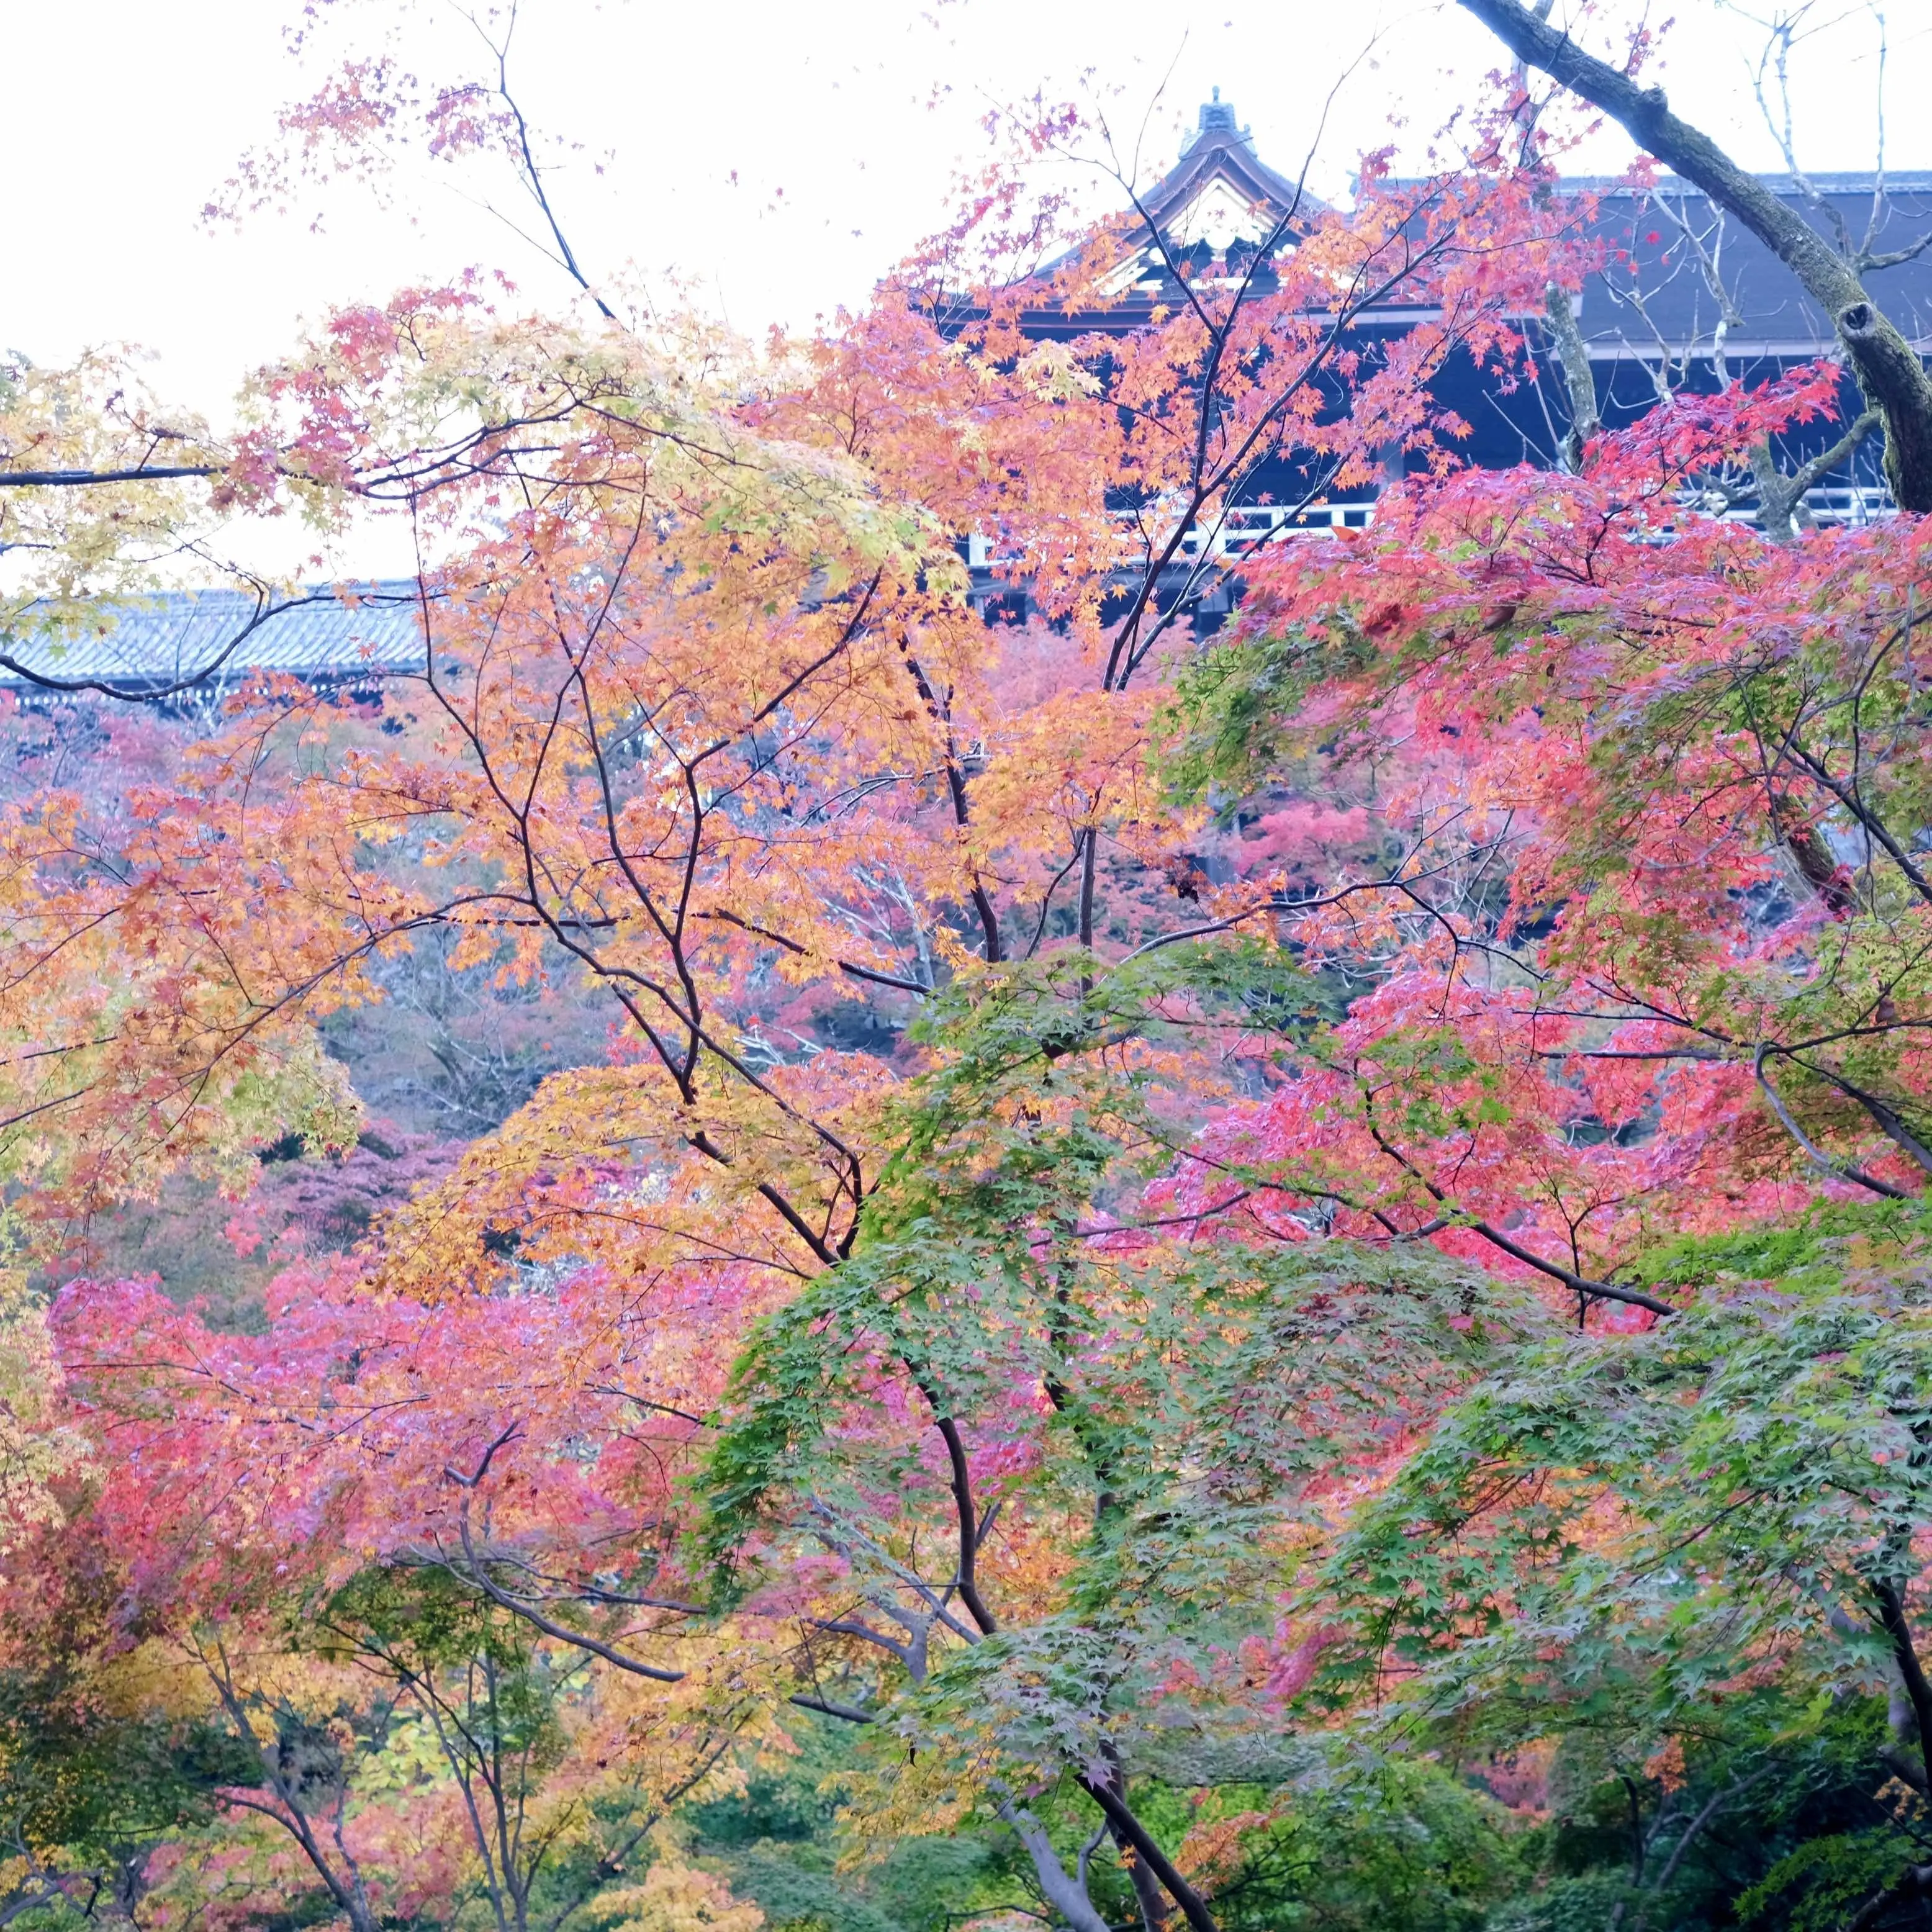 京都「清水寺」本堂下から見上げた景色